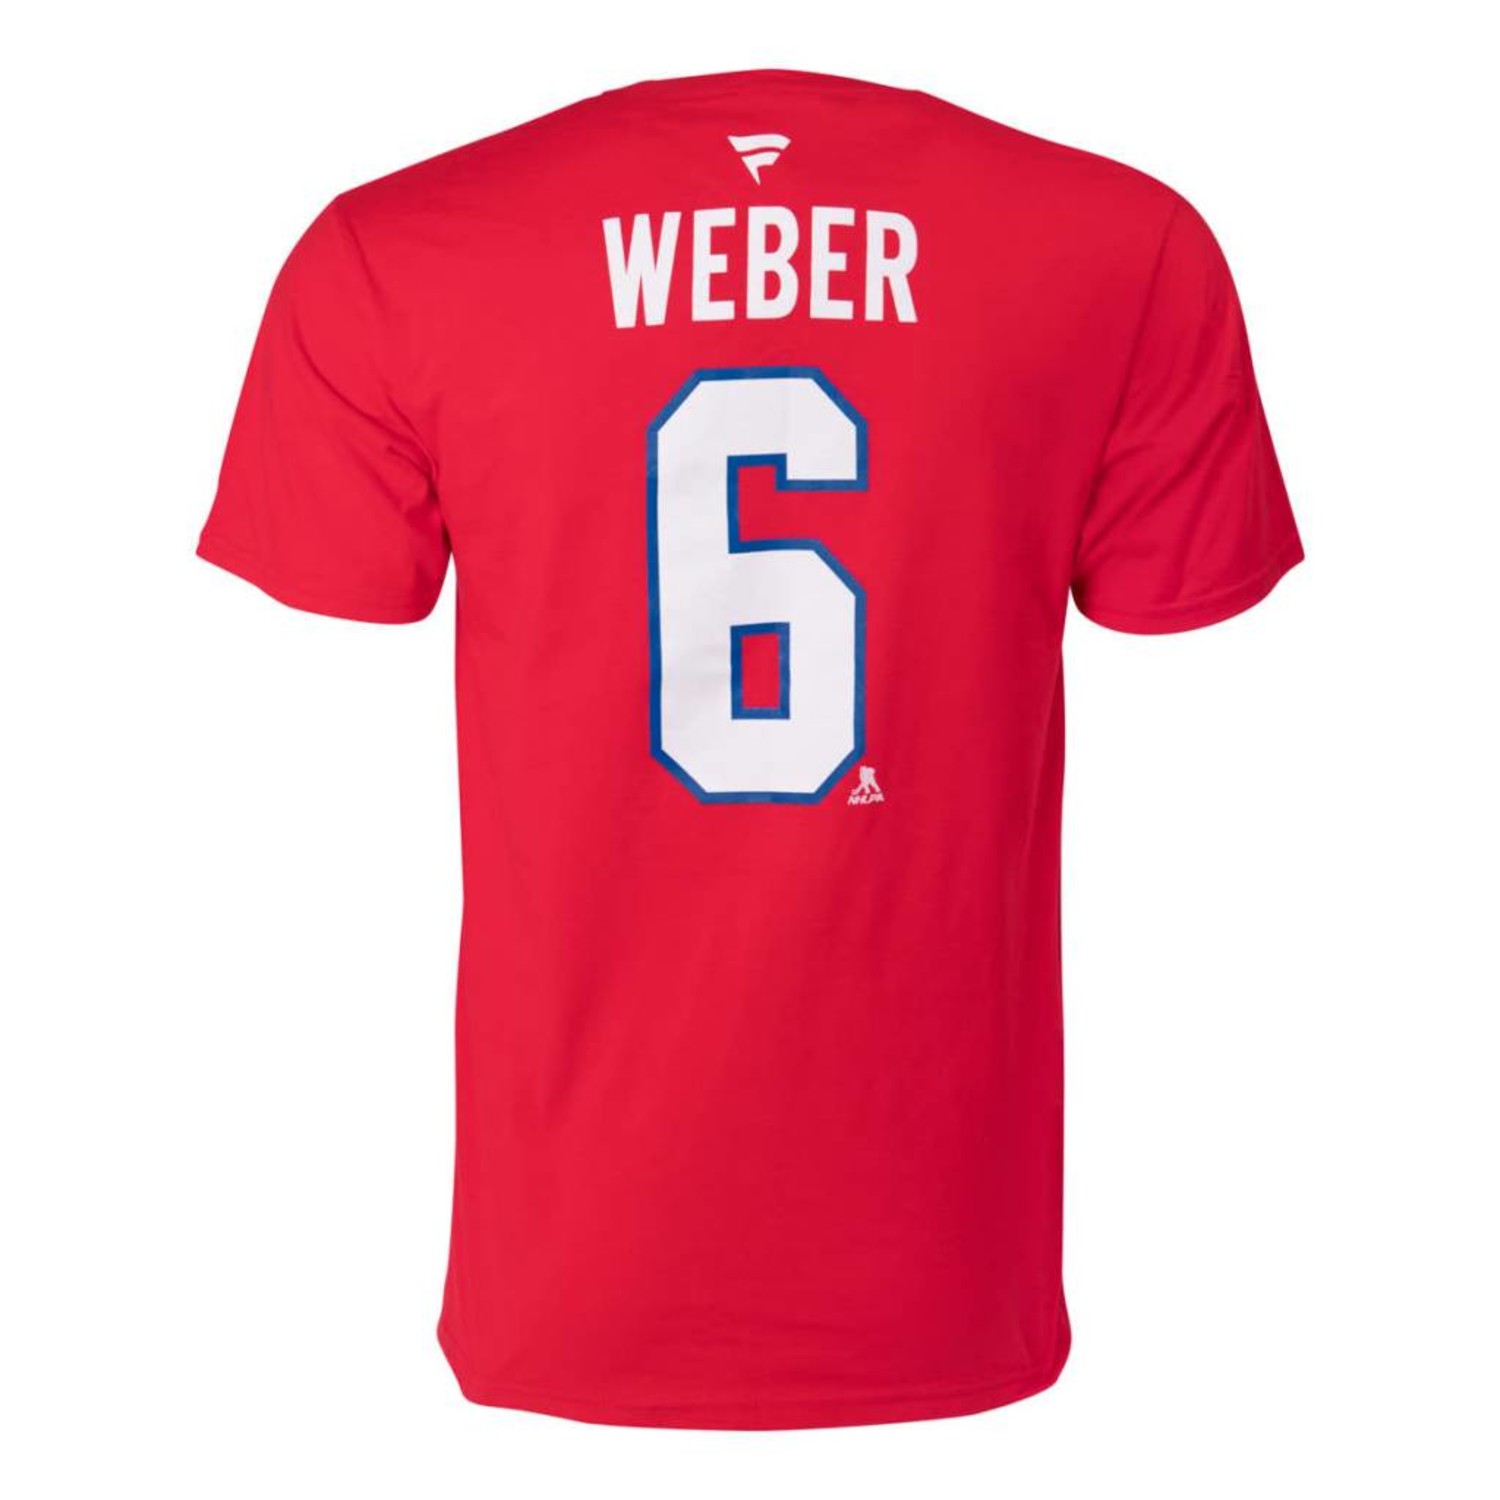 weber t shirt